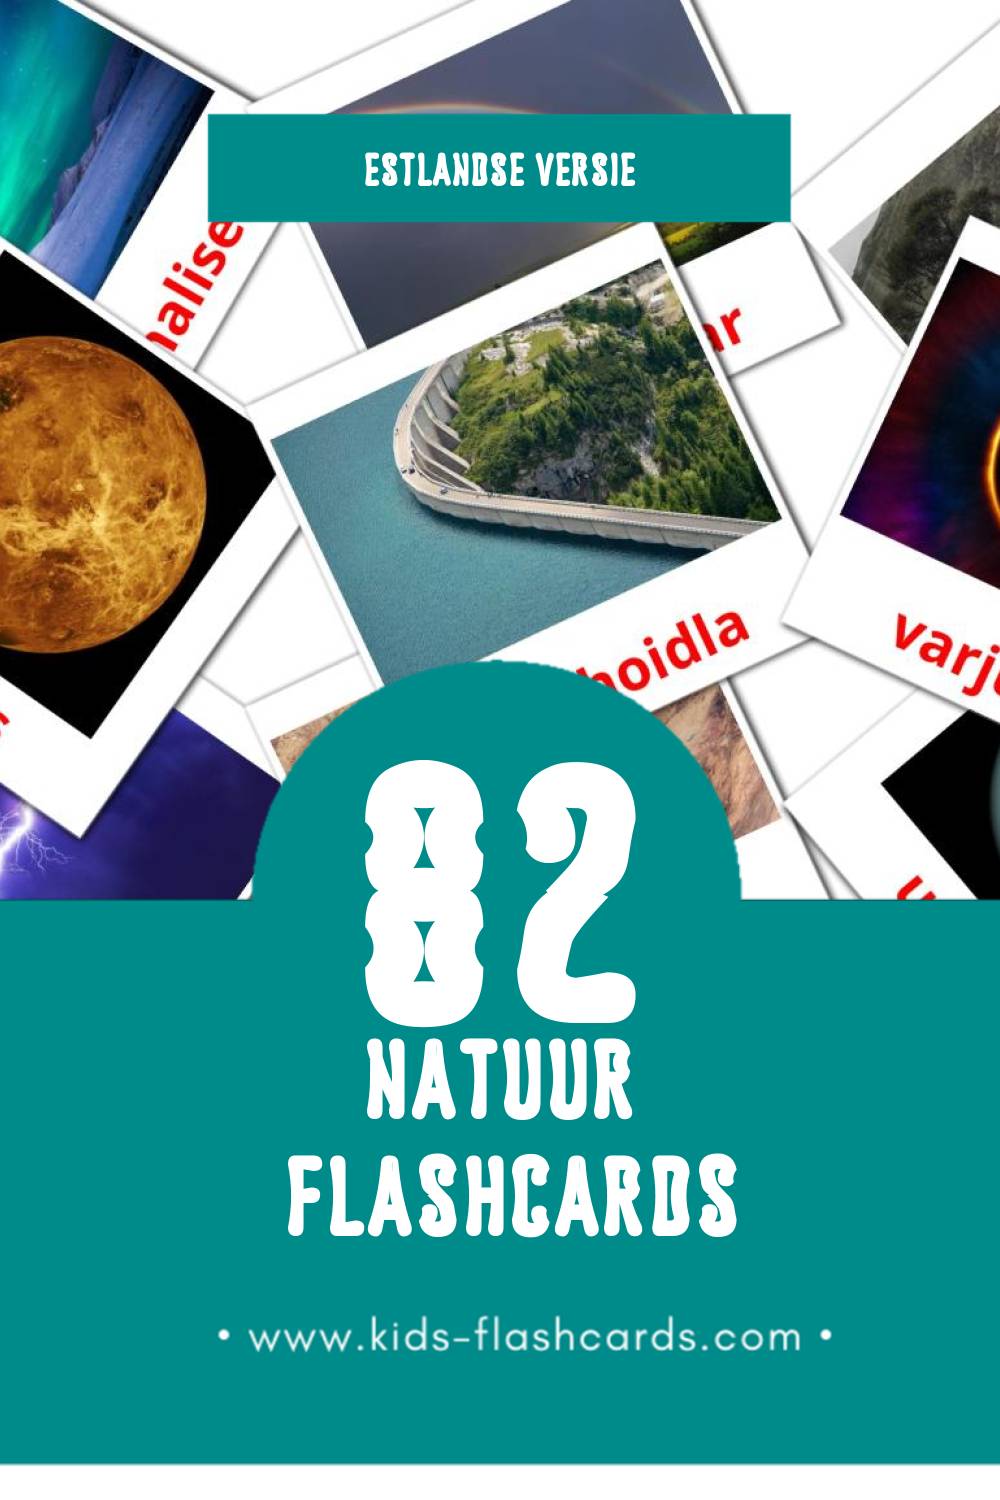 Visuele Loodus Flashcards voor Kleuters (82 kaarten in het Estlands)